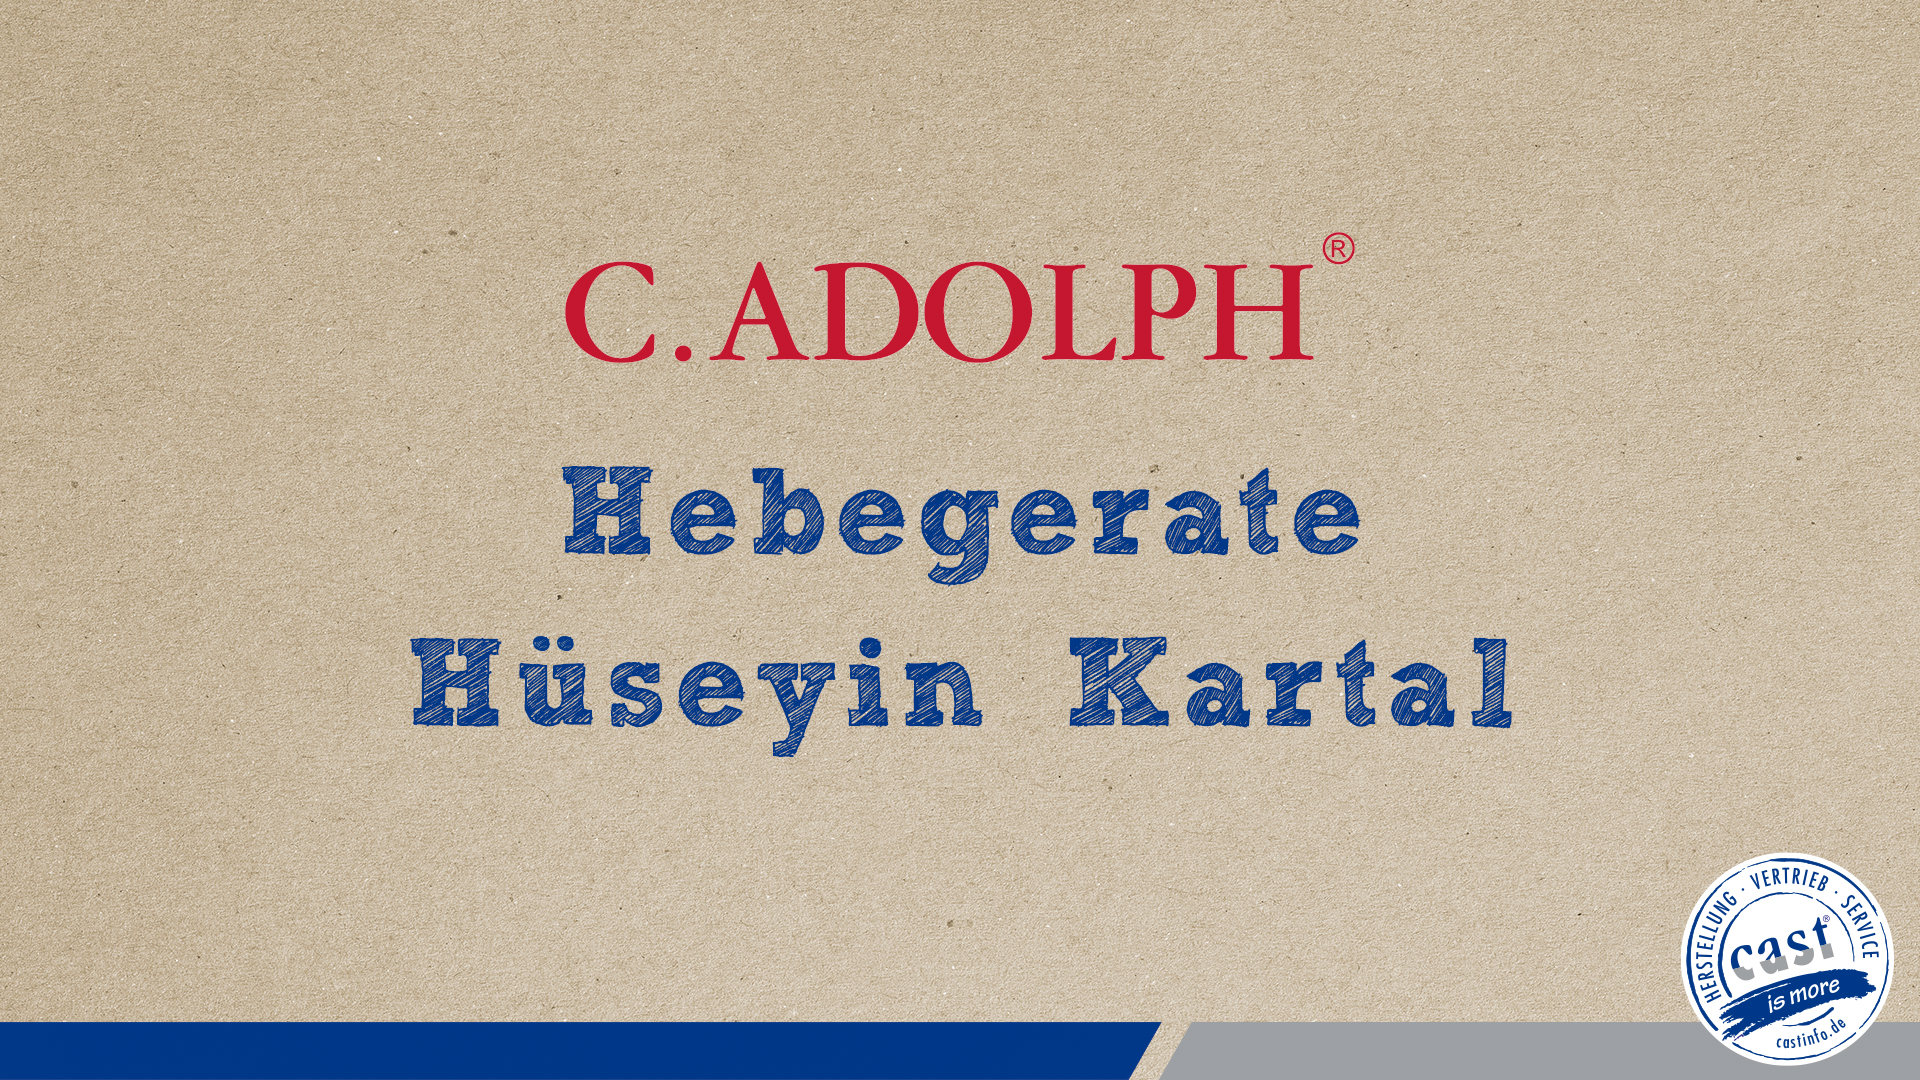 cast Vlog mit Hüseyin Kartal über die C.Adolph Hebegeräte